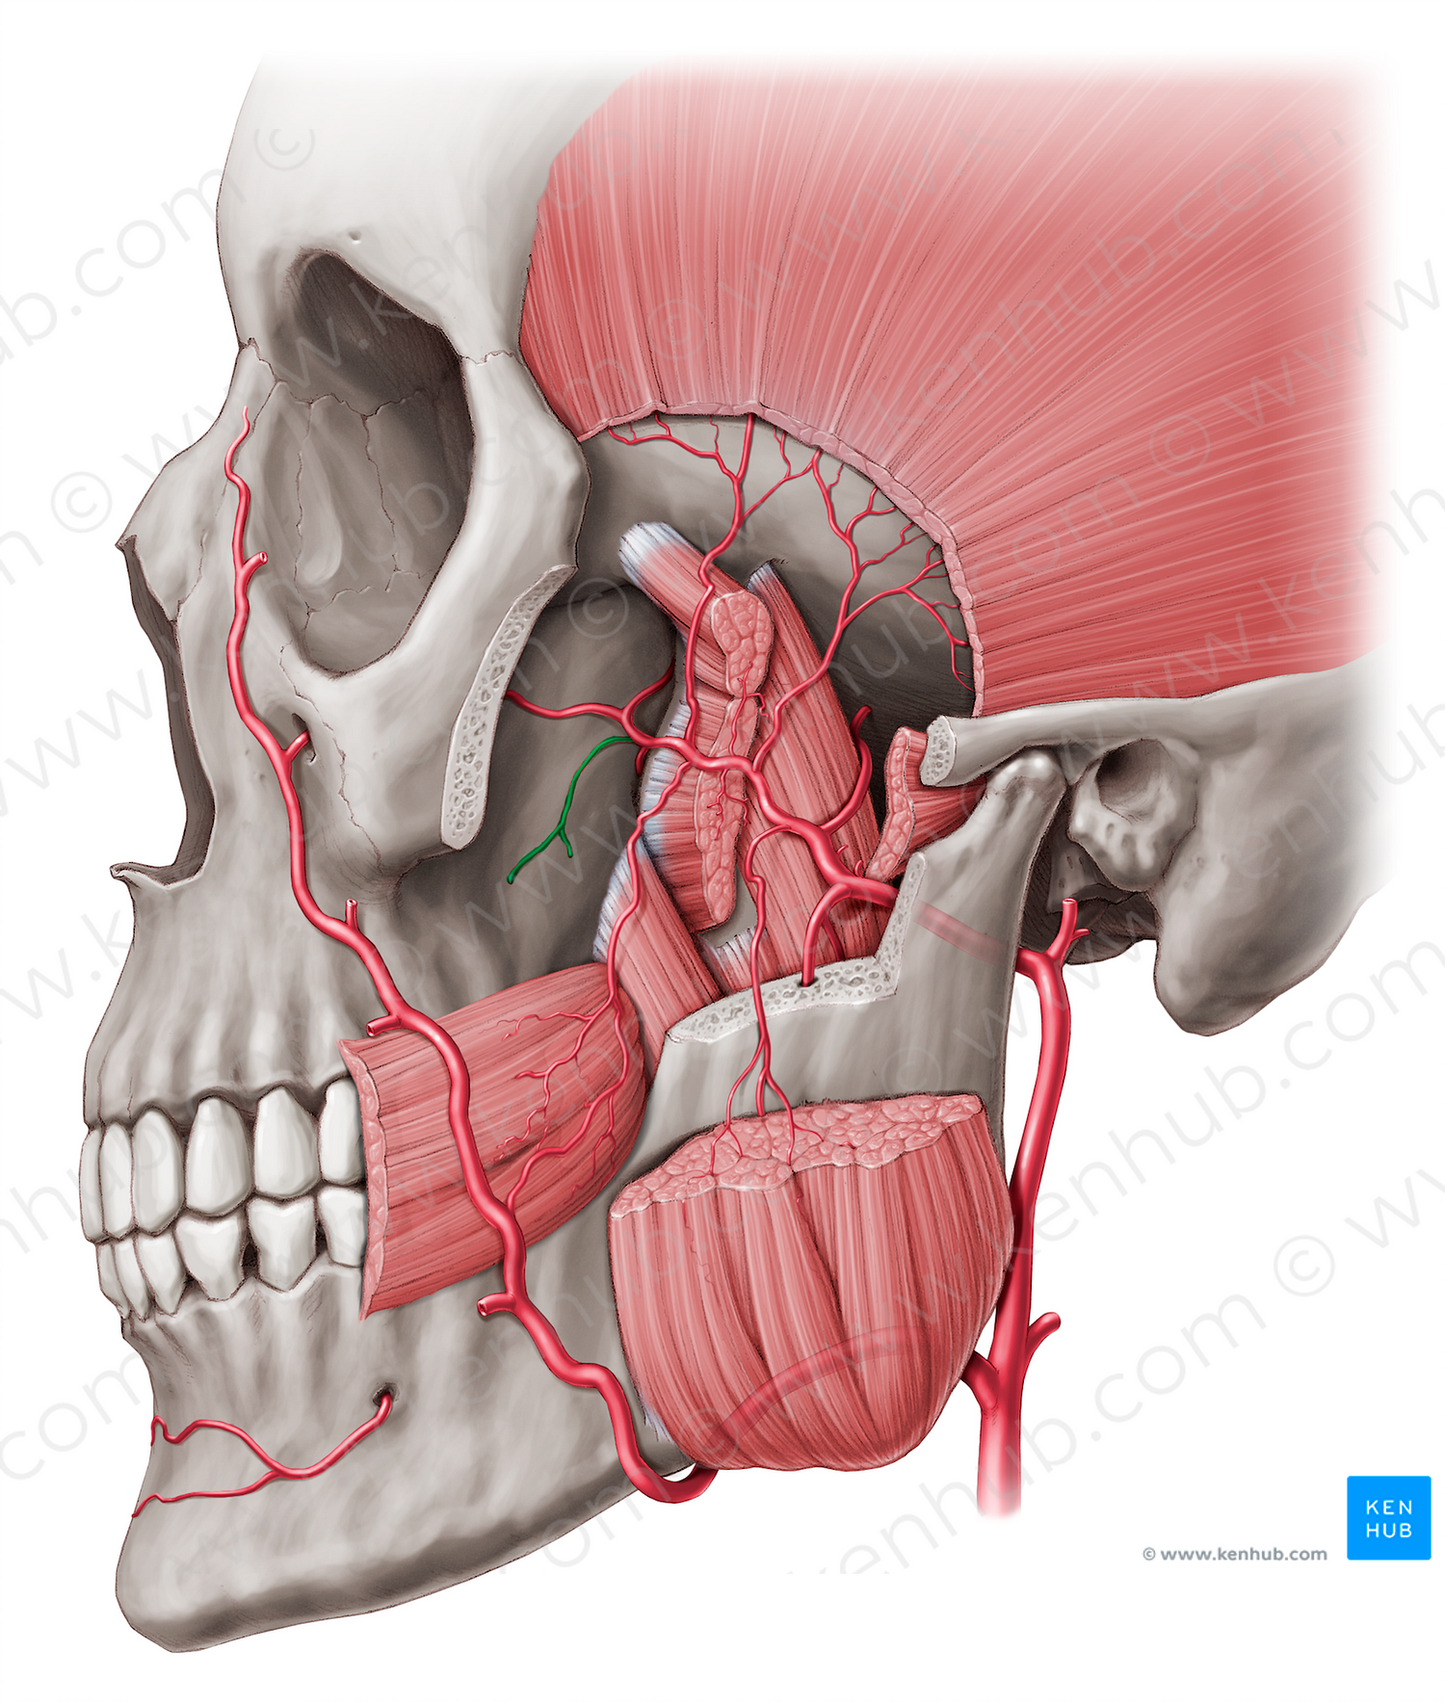 Posterior superior alveolar artery (#878)